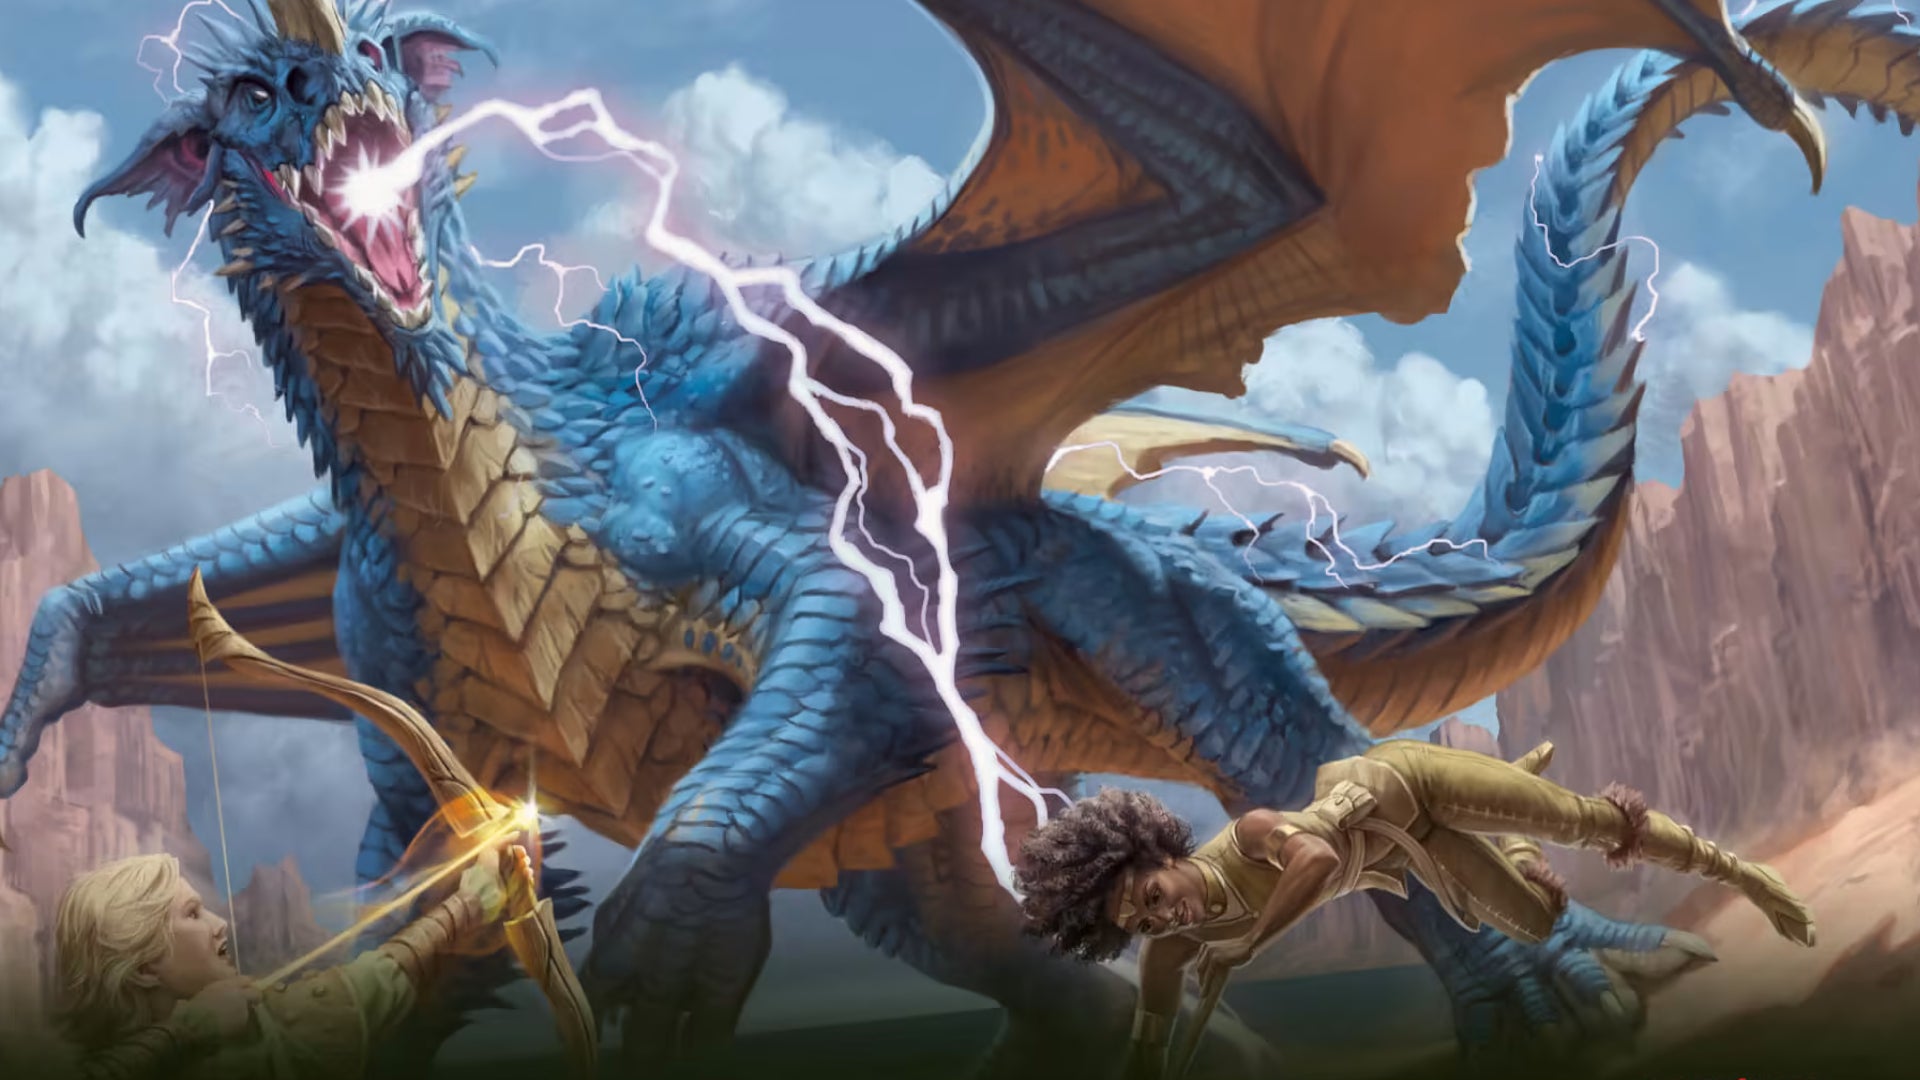 Dungeons & Dragons: Hãy khám phá thế giới tuyệt vời của Dungeons & Dragons với các nhân vật hấp dẫn và cuộc phiêu lưu không ngừng. Hình ảnh sẽ đưa bạn vào một thế giới đầy phép thuật và kỳ lạ, hãy sẵn sàng trở thành một chiến binh đích thực và chiến đấu với những con quái vật đầy mê hoặc.